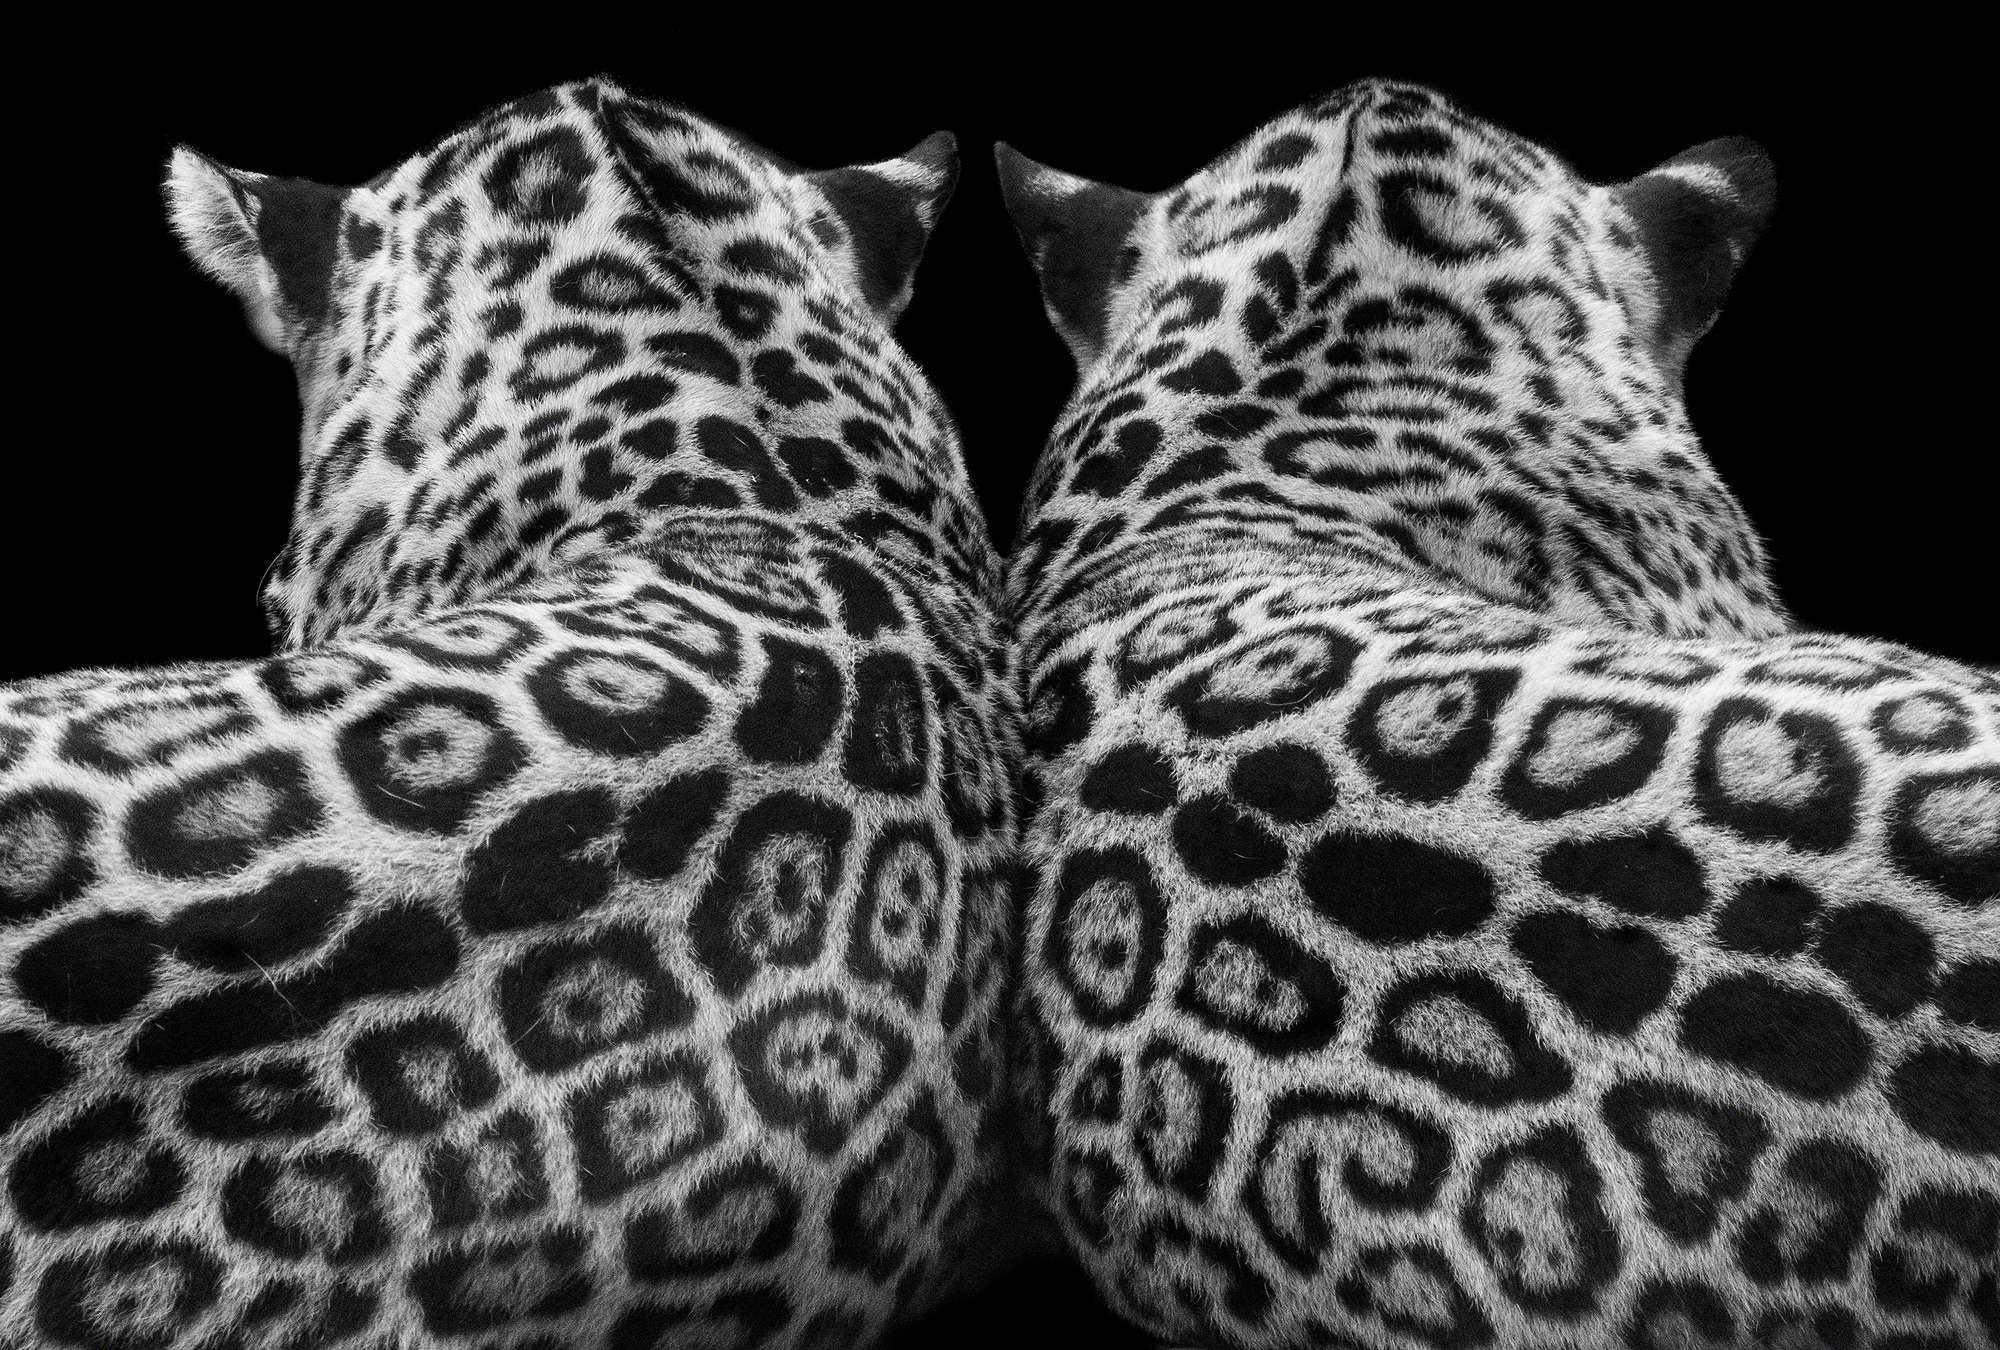             Papier peint panoramique Couple de léopards sur fond noir
        